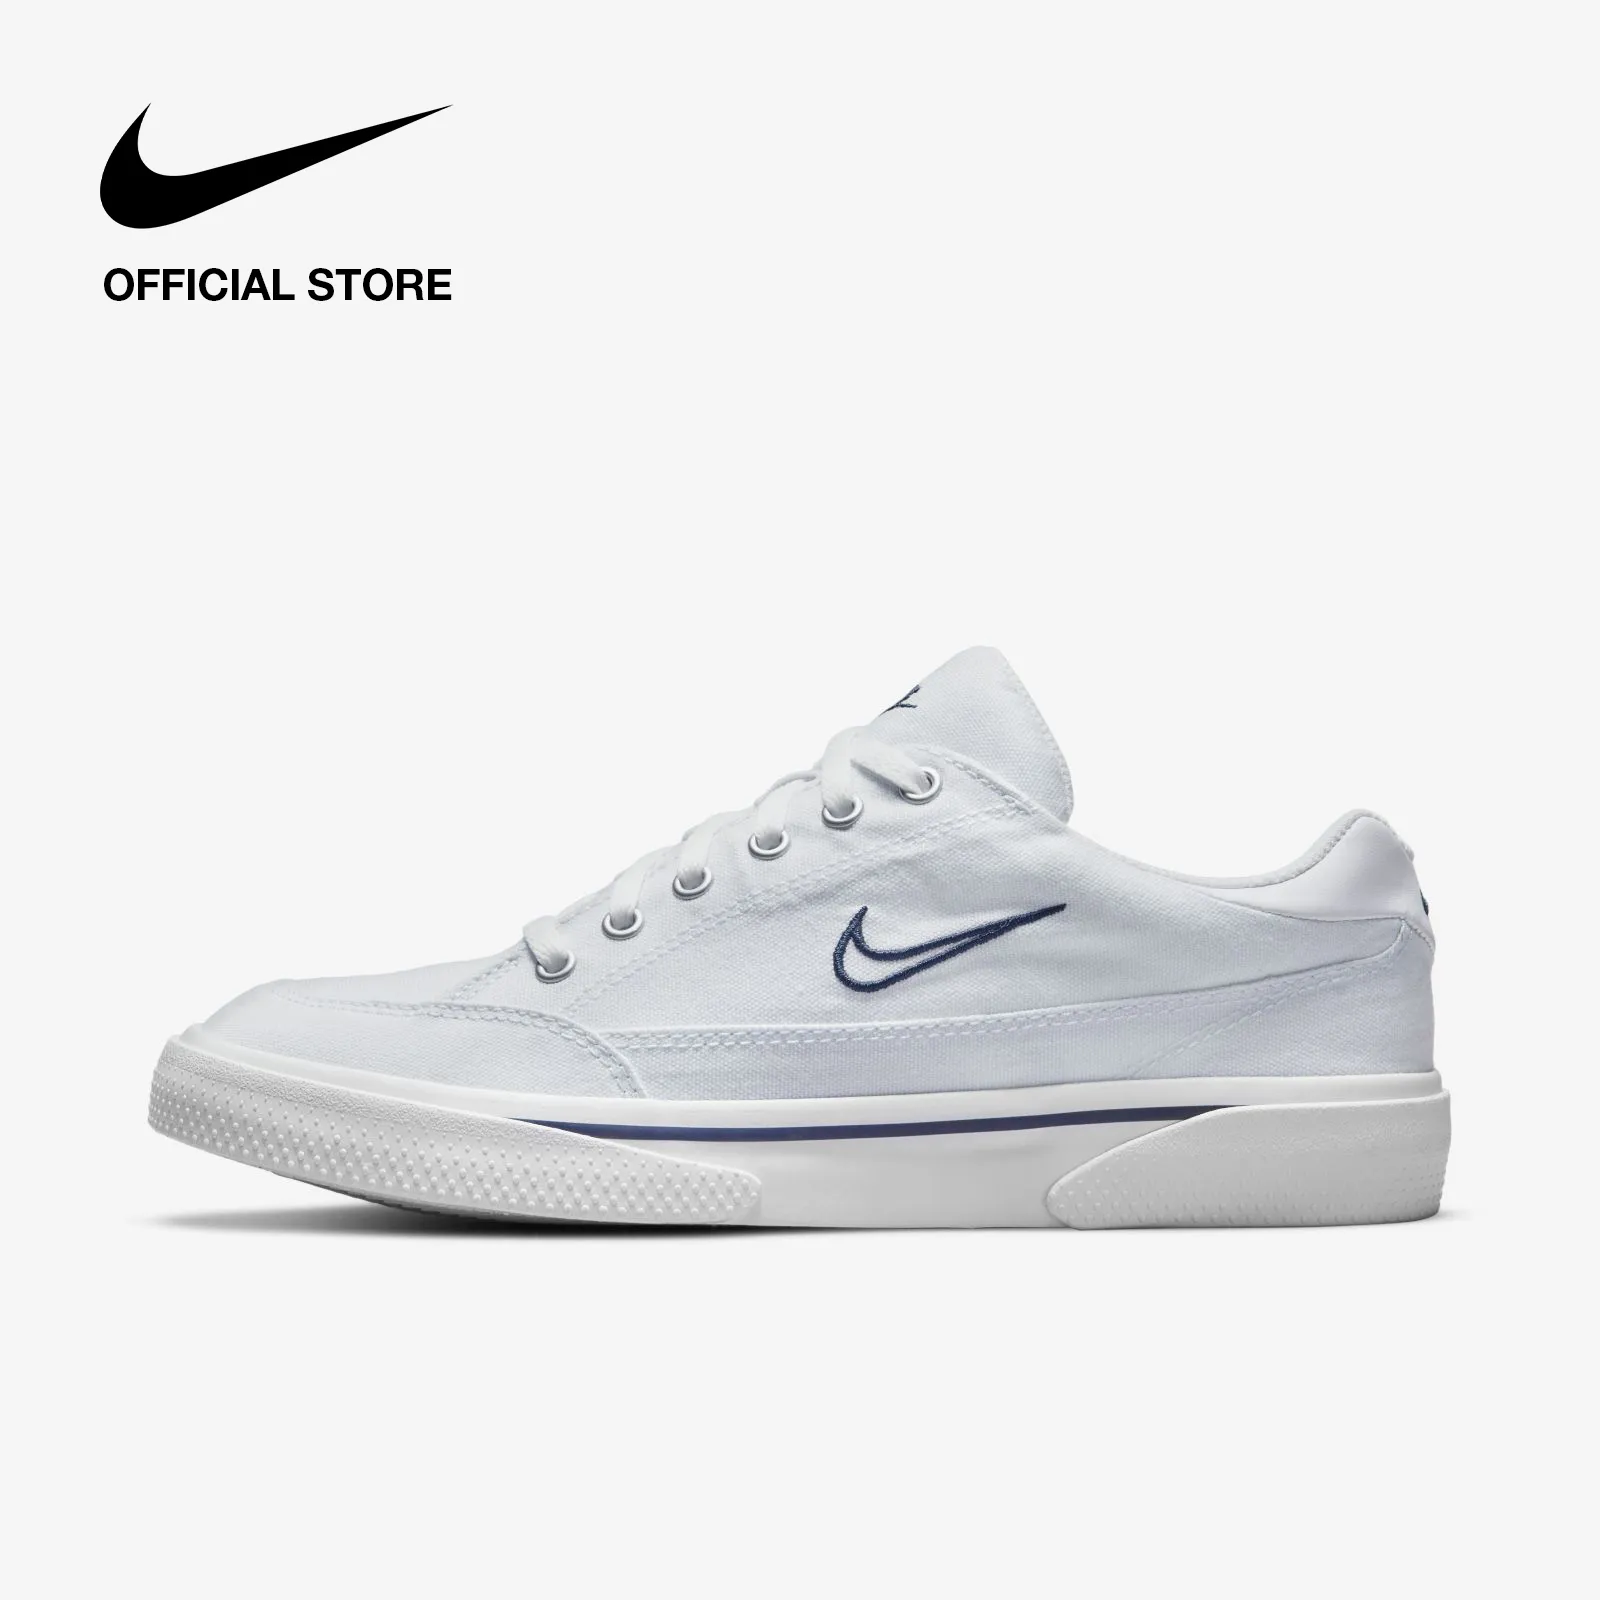 Nike Women's Retro GTS Shoes - White ไนกี้ รองเท้าผู้หญิง เรโทร จีทีเอส - สีขาว